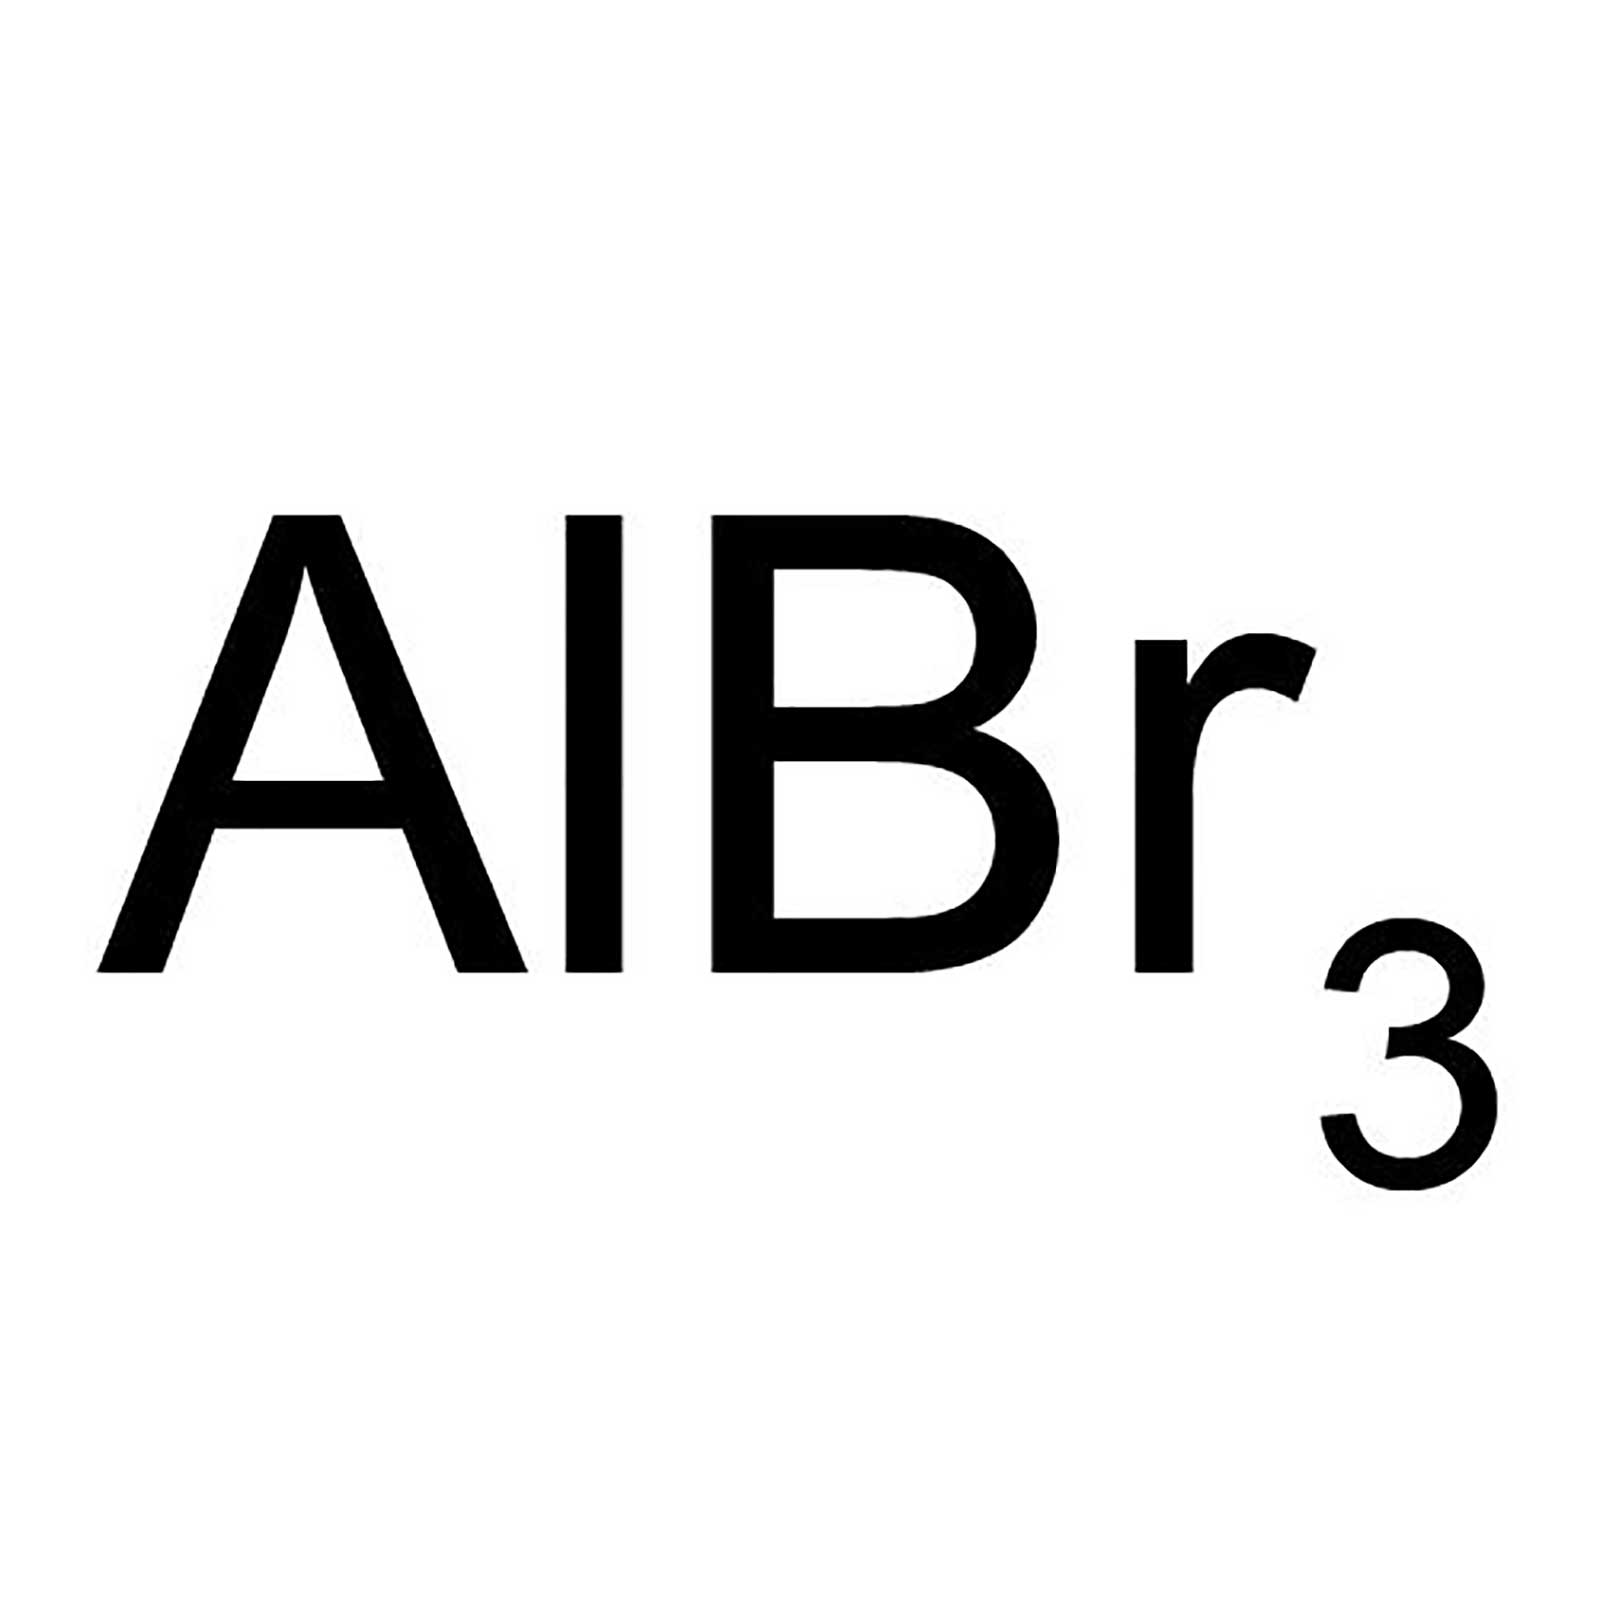 Albr3 zn. Бромид алюминия формула. Бромид алюминия 3 формула. Бромид алюминия формула химическая. Алюминия бромид алюминия алюминий..